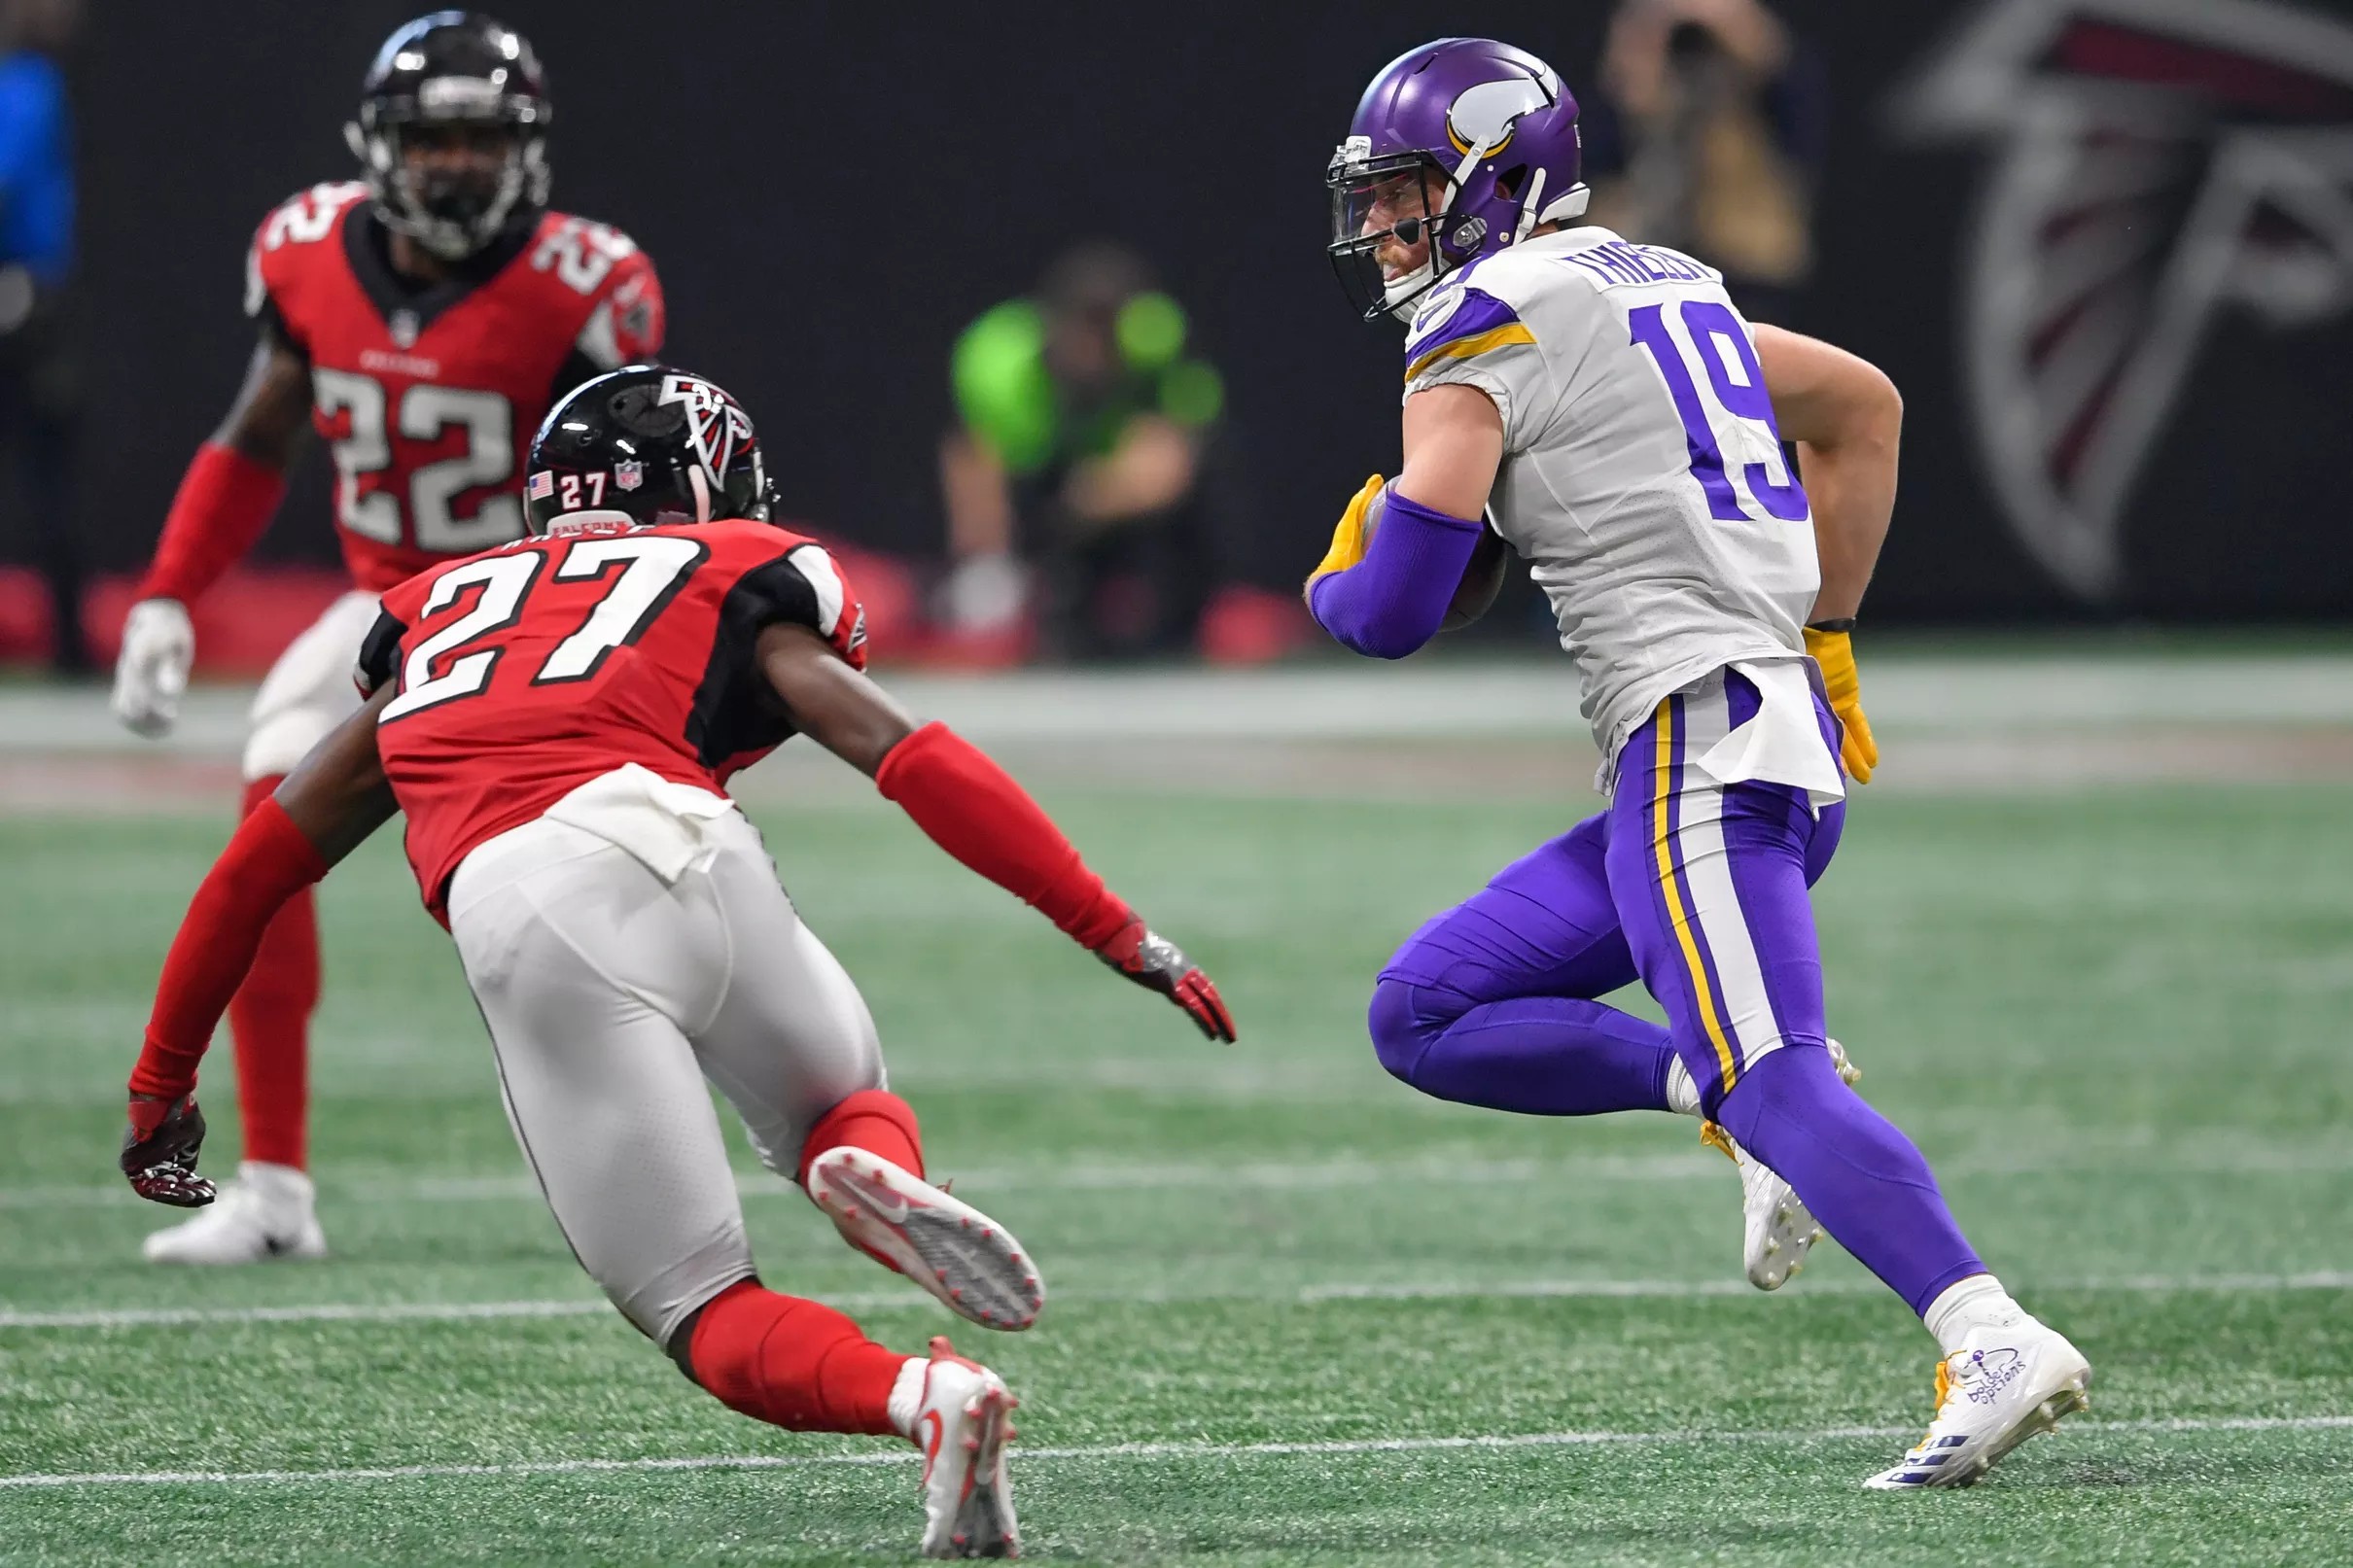 Falcons defense vs. Vikings offense: Who wins this matchup?